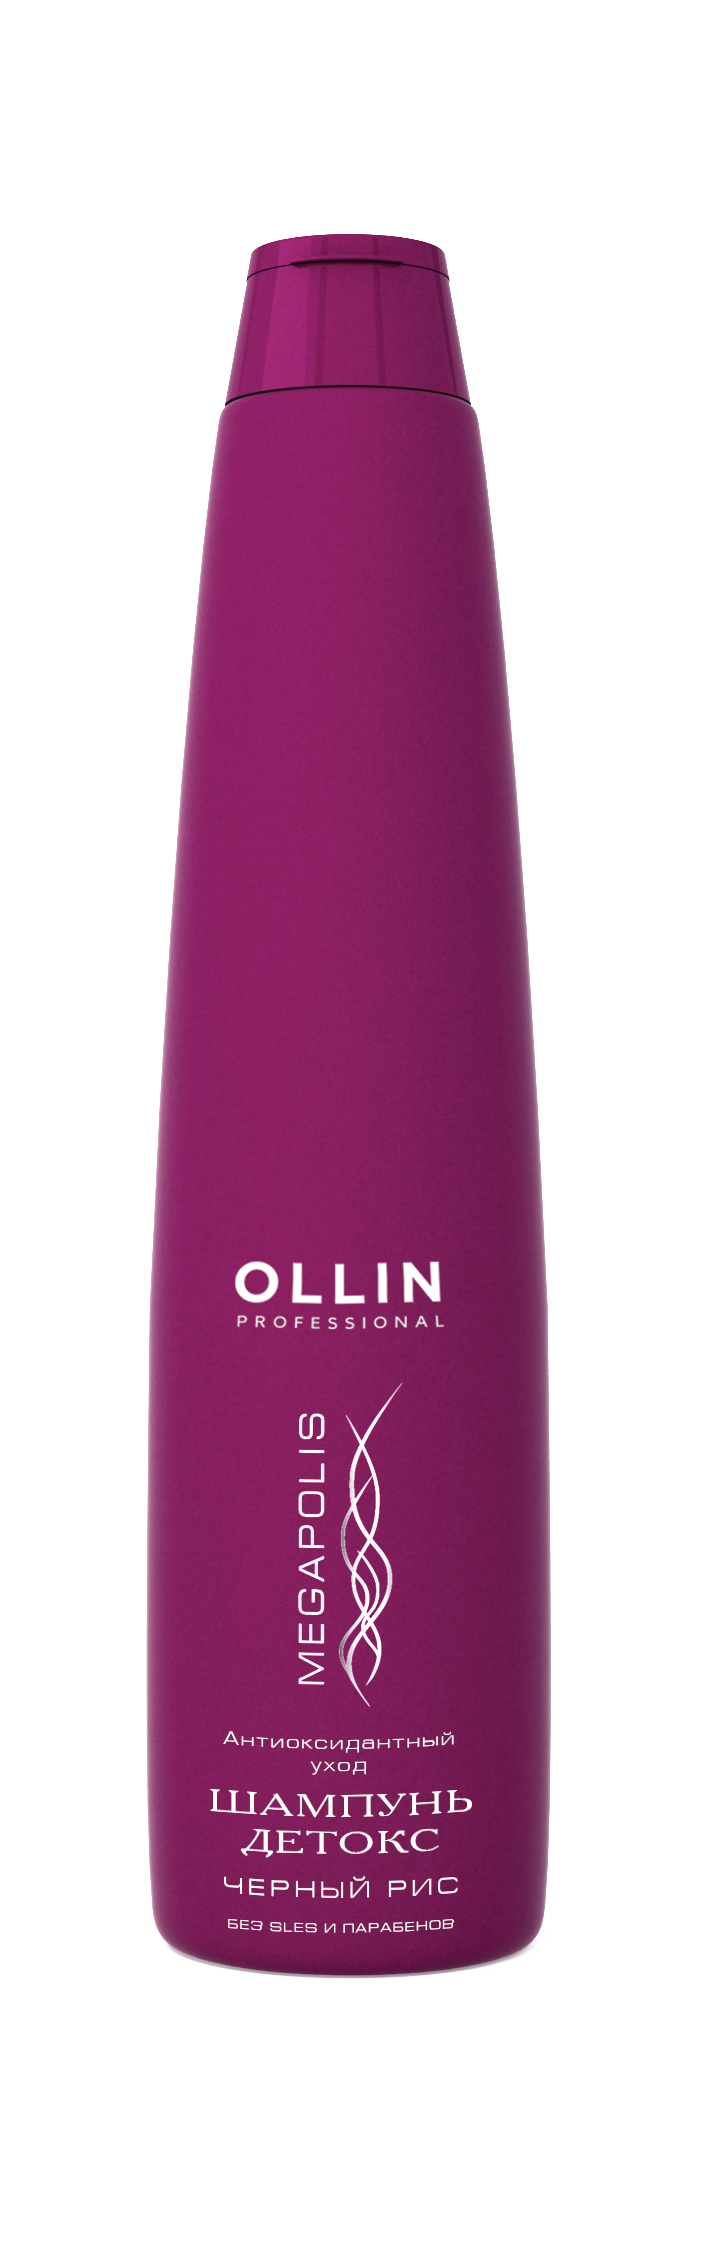 OLLIN MEGAPOLIS Detox šampūnas su juodaisiais ryžiais 400 ml